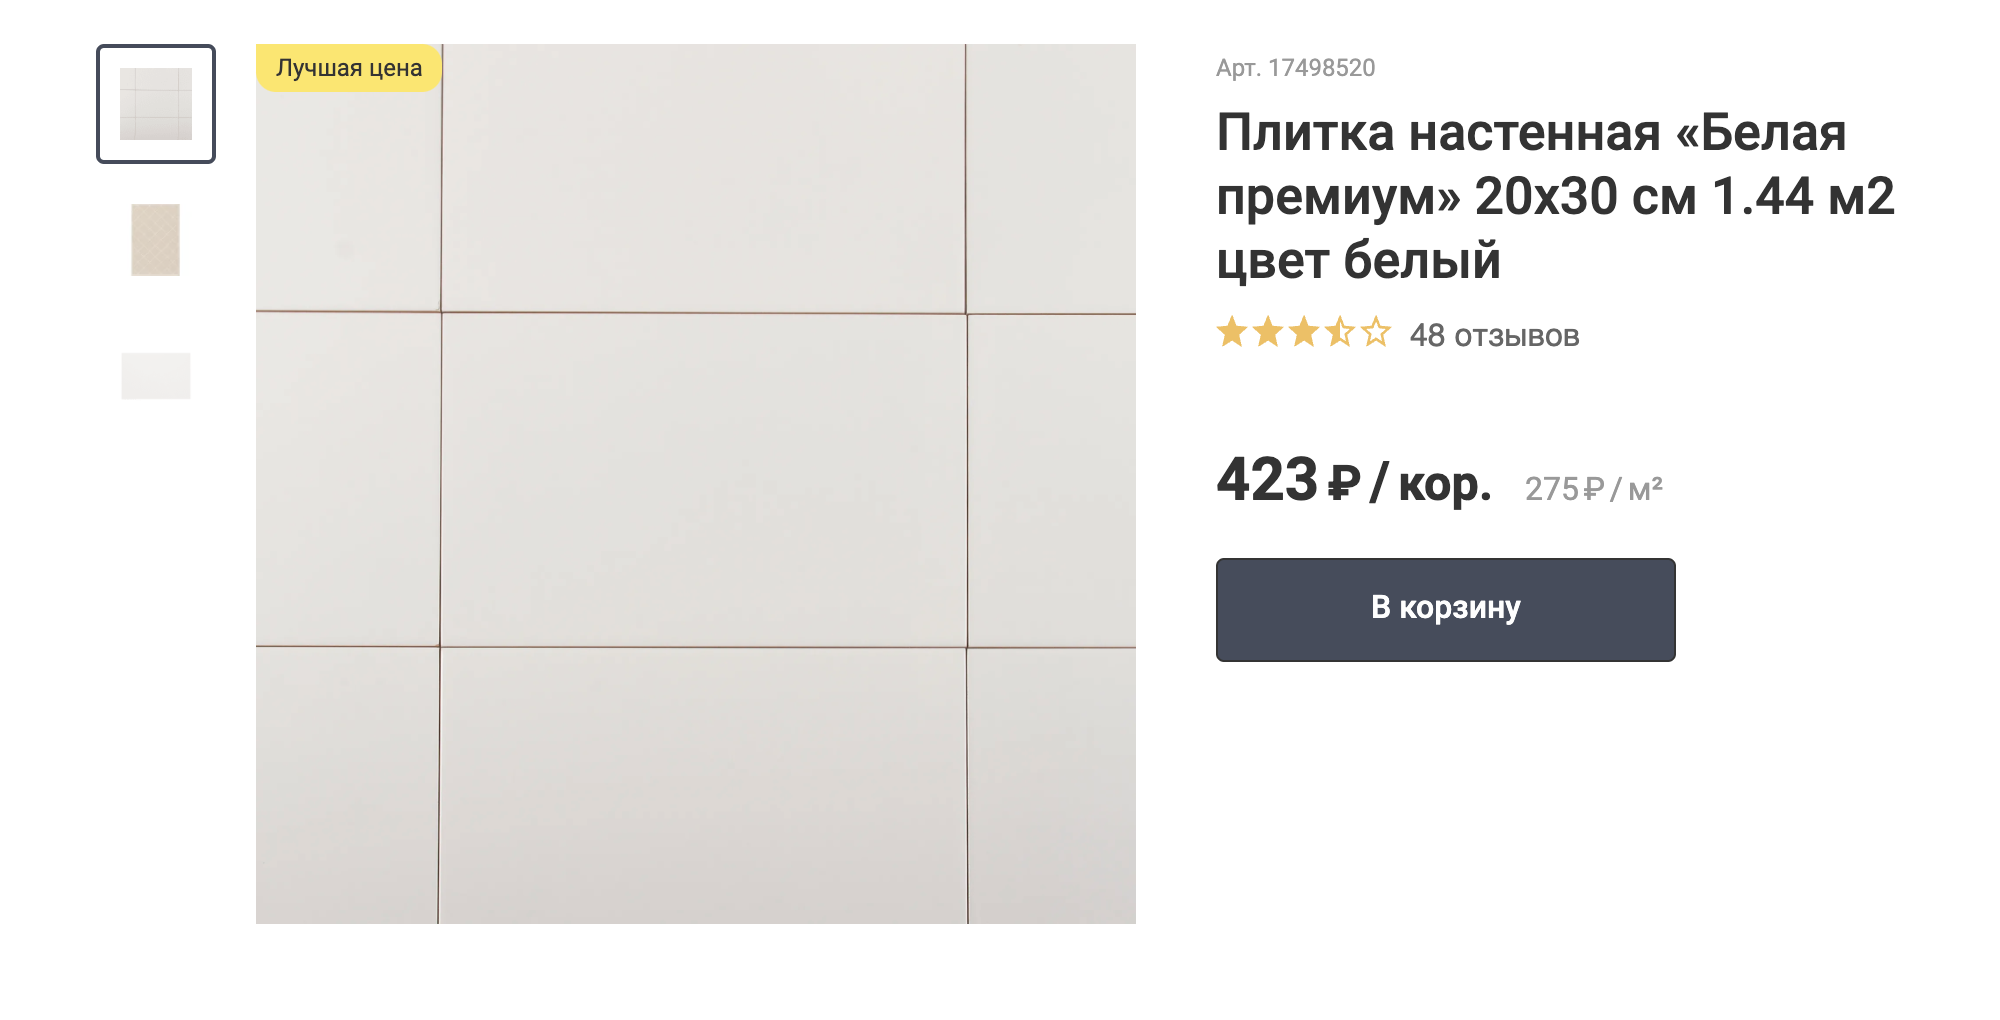 Эта плитка обошлась нам дешевле, чем указано, потому что в 2021 году цены повысились. Источник: leroymerlin.ru